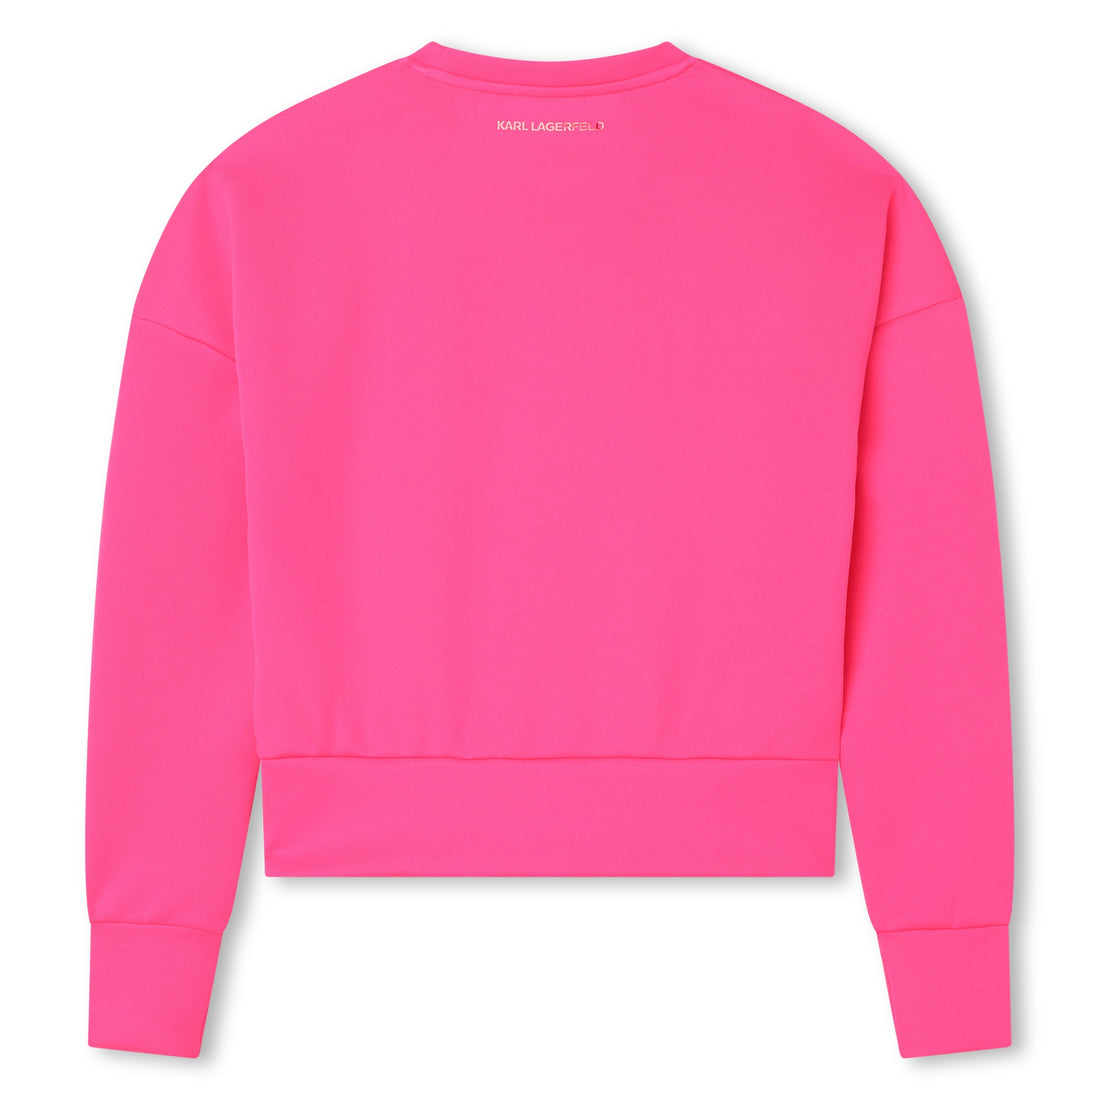 Karl Lagerfeld Kids Sweatshirt Style: Z15457